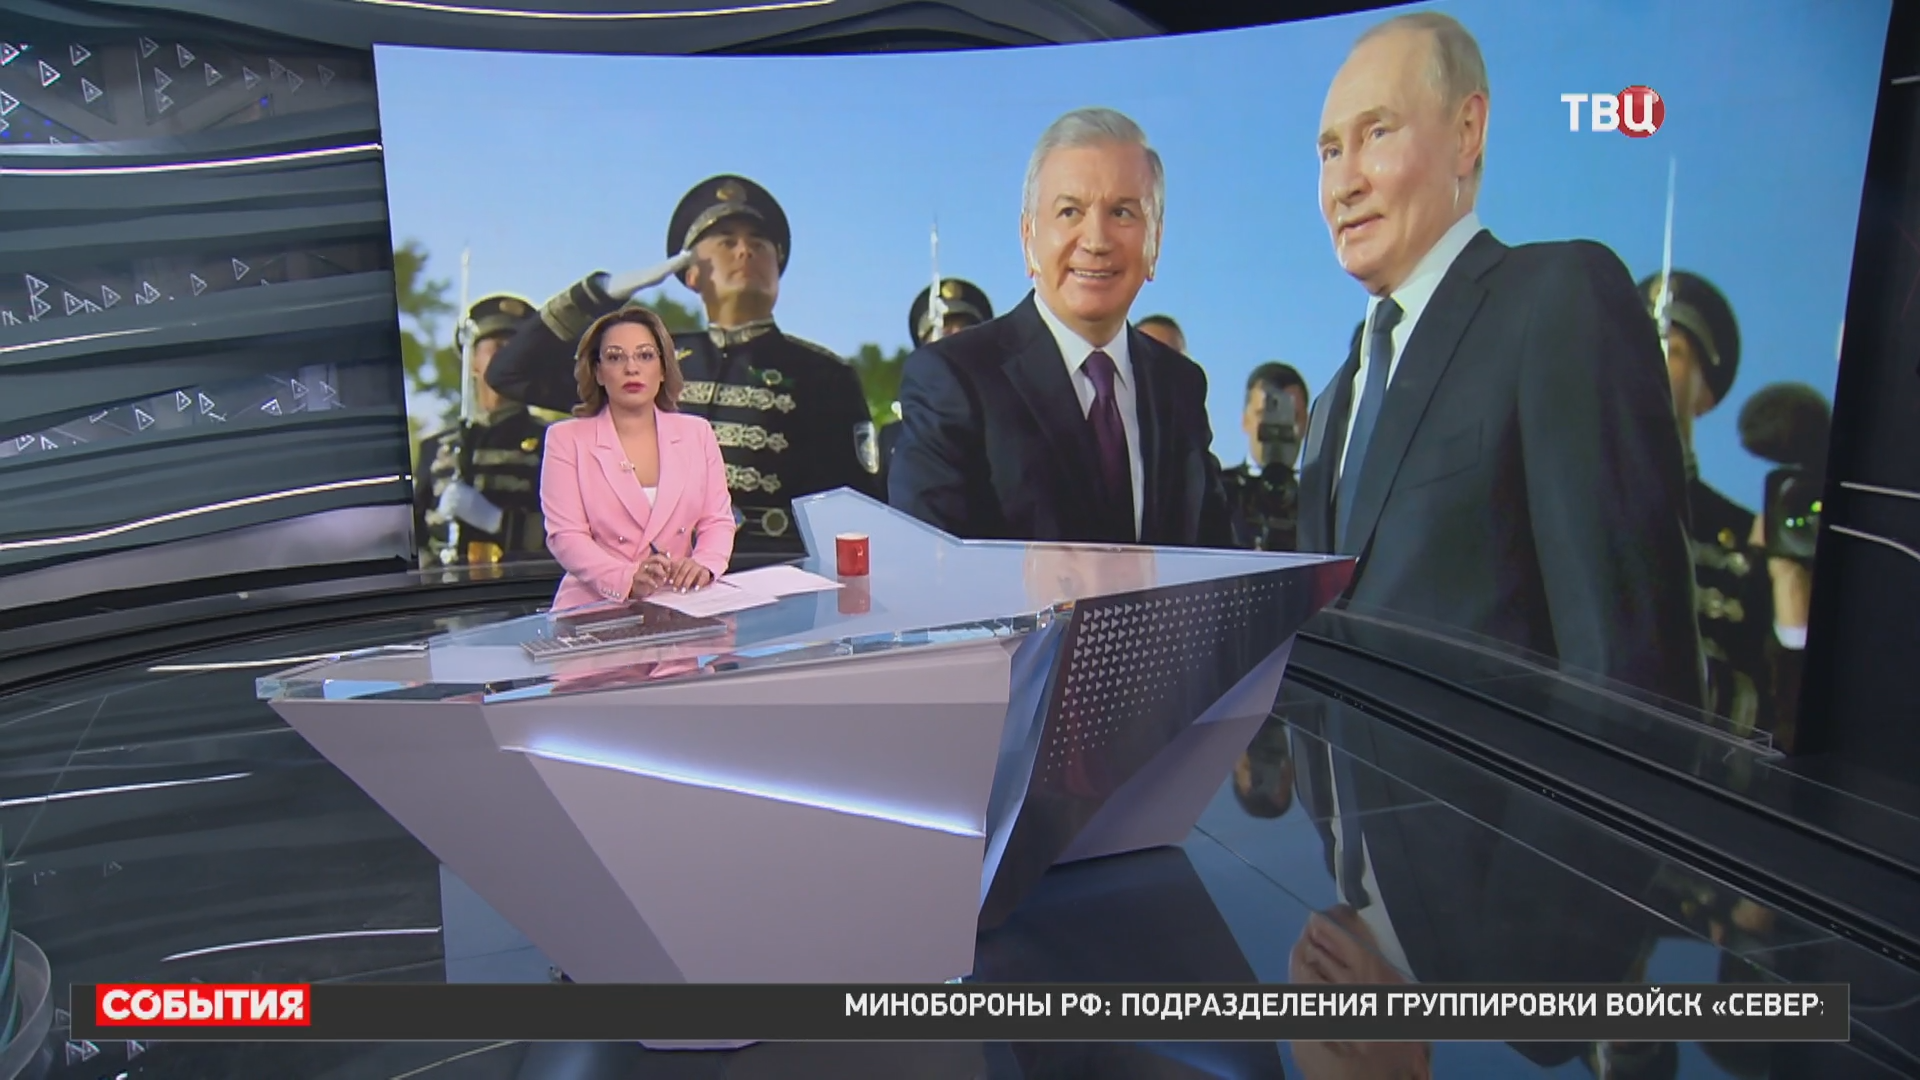 Президенты России и Узбекистана начали общение в резиденции "Куксарой" / События на ТВЦ